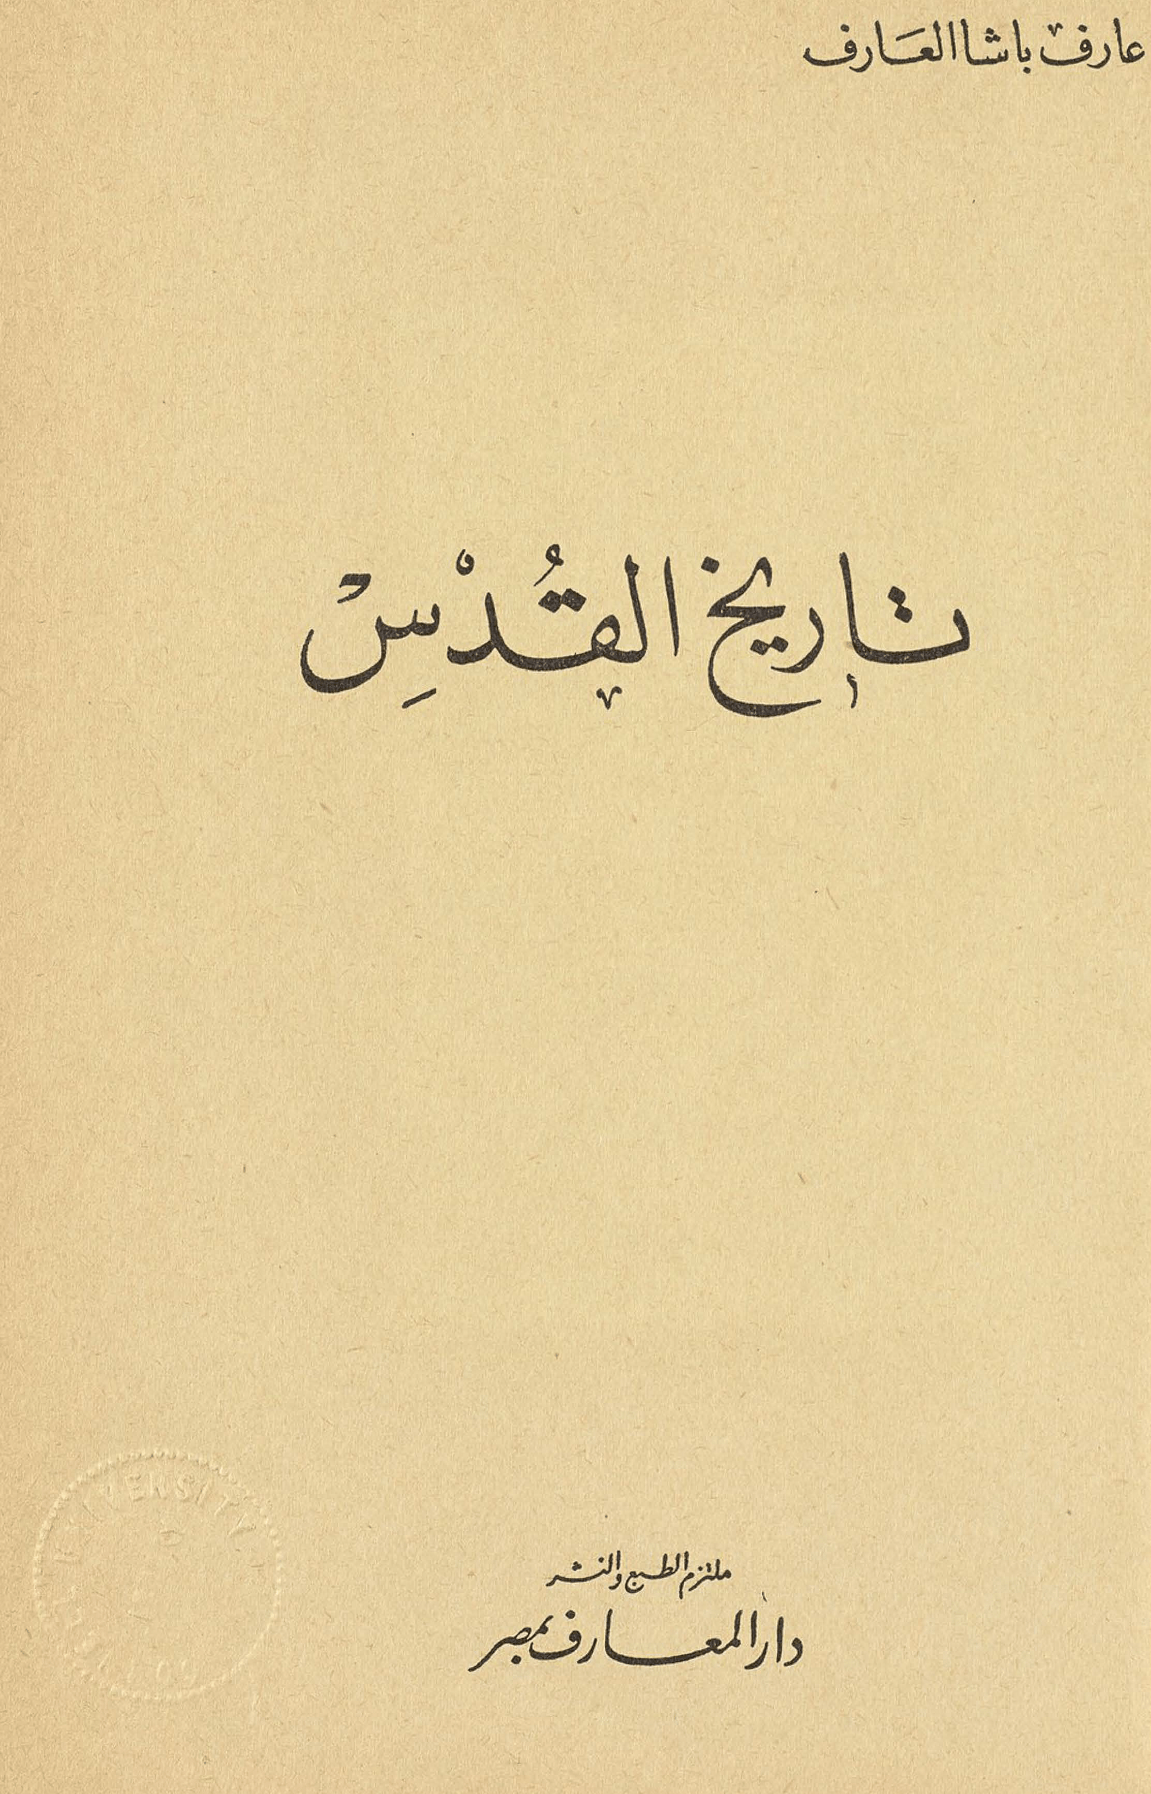 غلاف كتاب تاريخ القدس لعارف باشا العارف